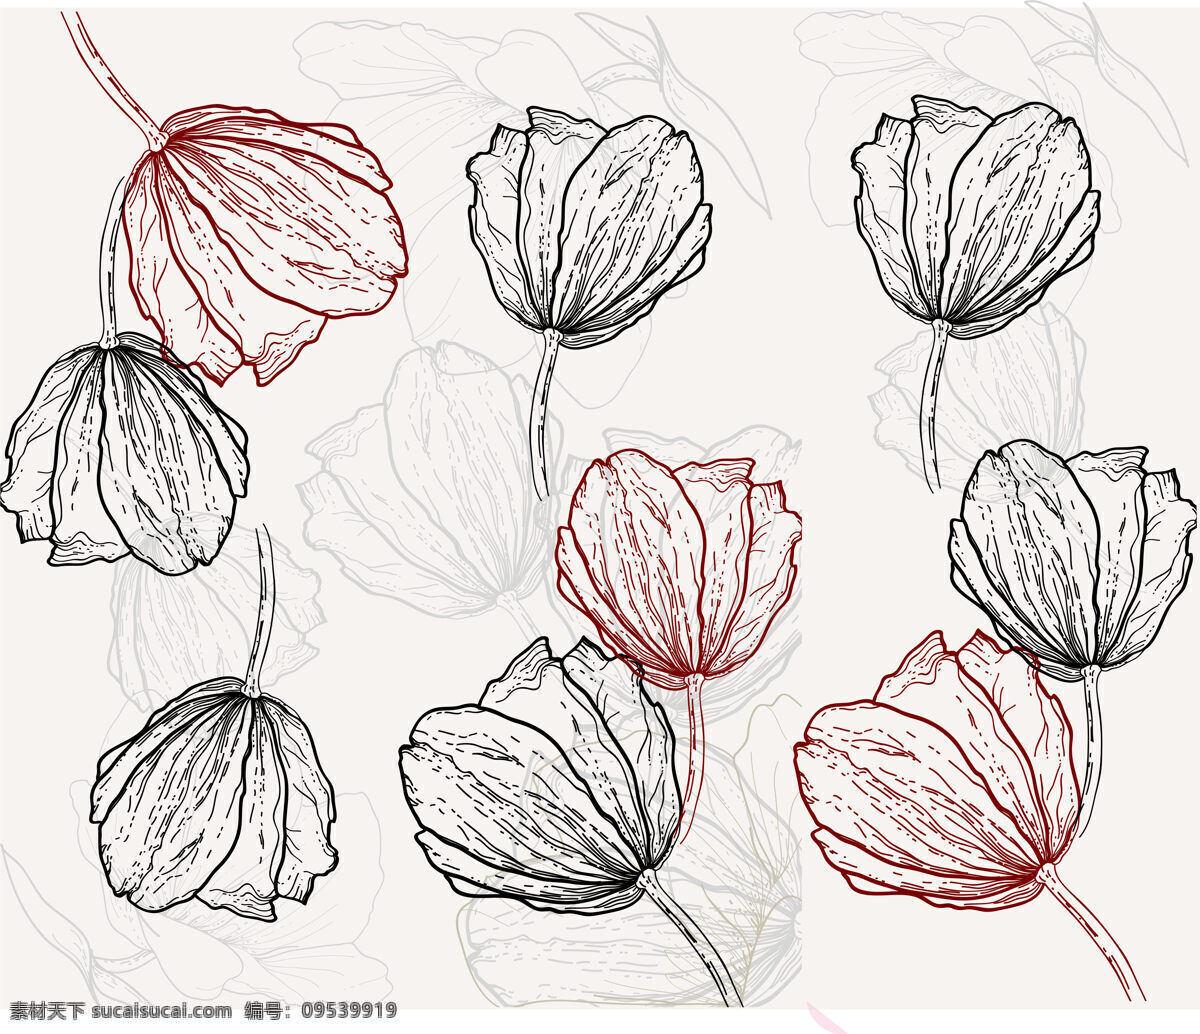 现代 简约 郁金香 线条 背景 墙 玫瑰线条 玫瑰花纹 郁金香花纹 抽象线条 北欧简约玫瑰 抽象花朵条纹